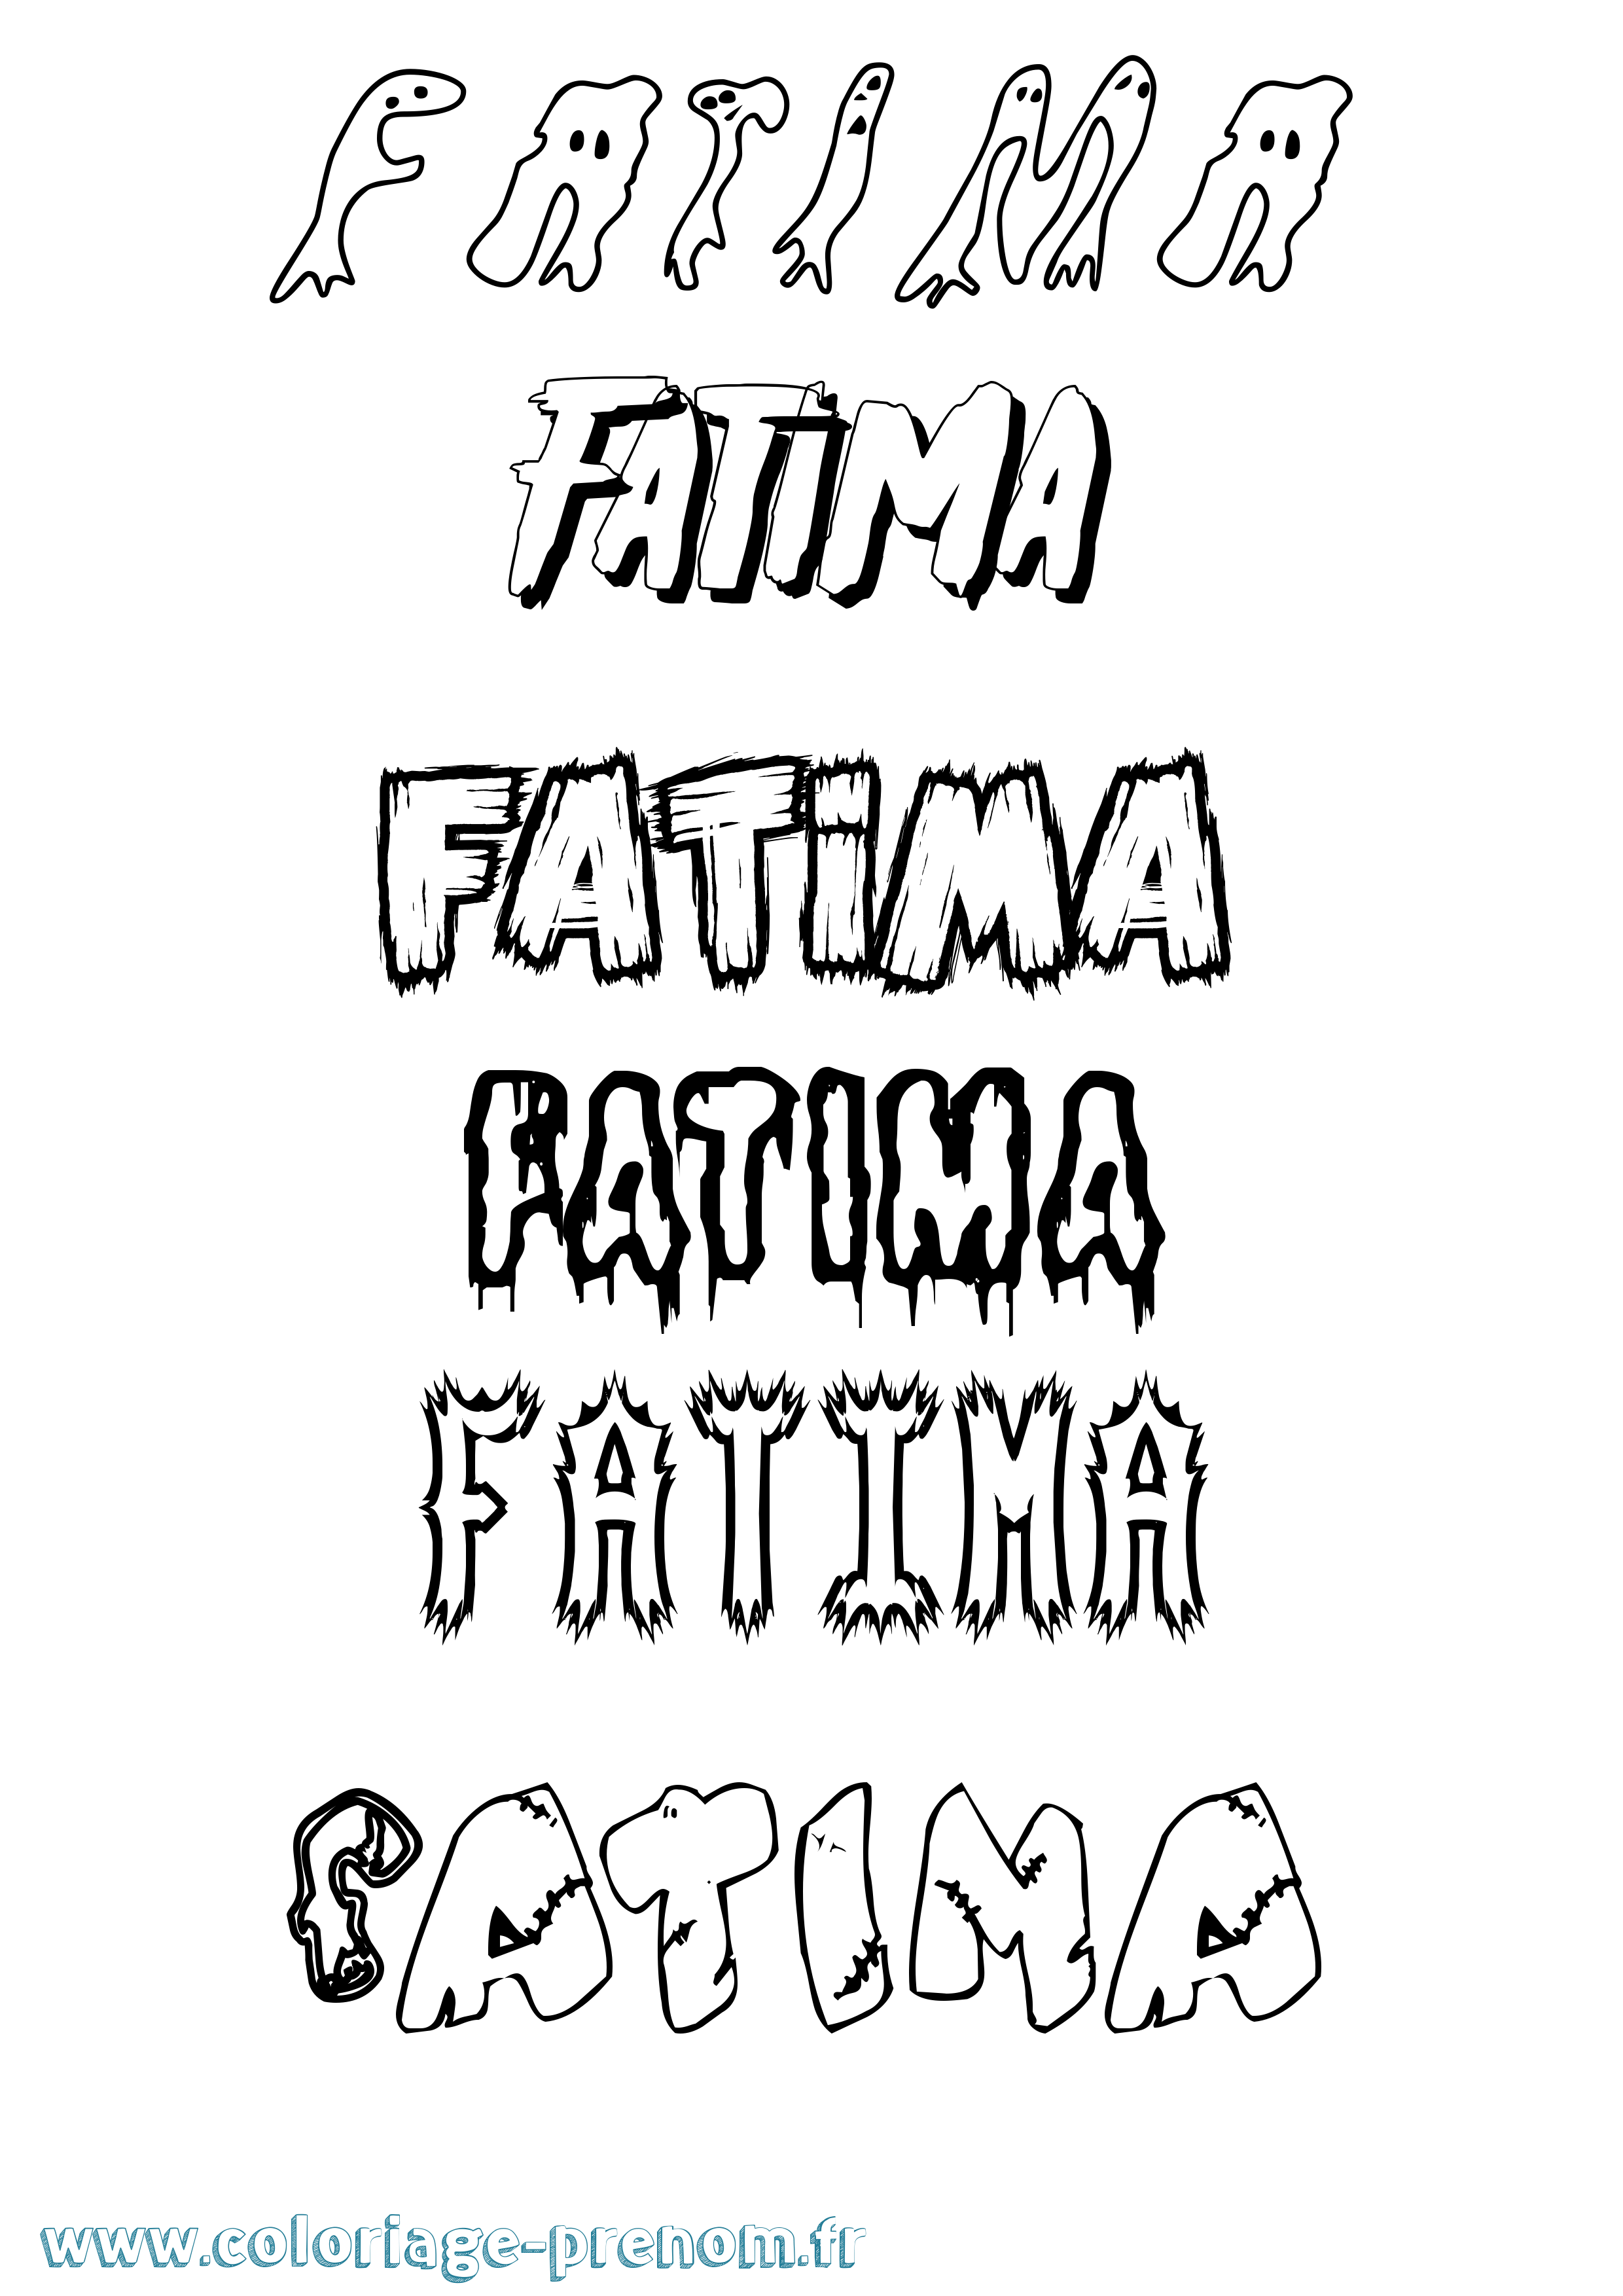 Coloriage prénom Fatima Frisson